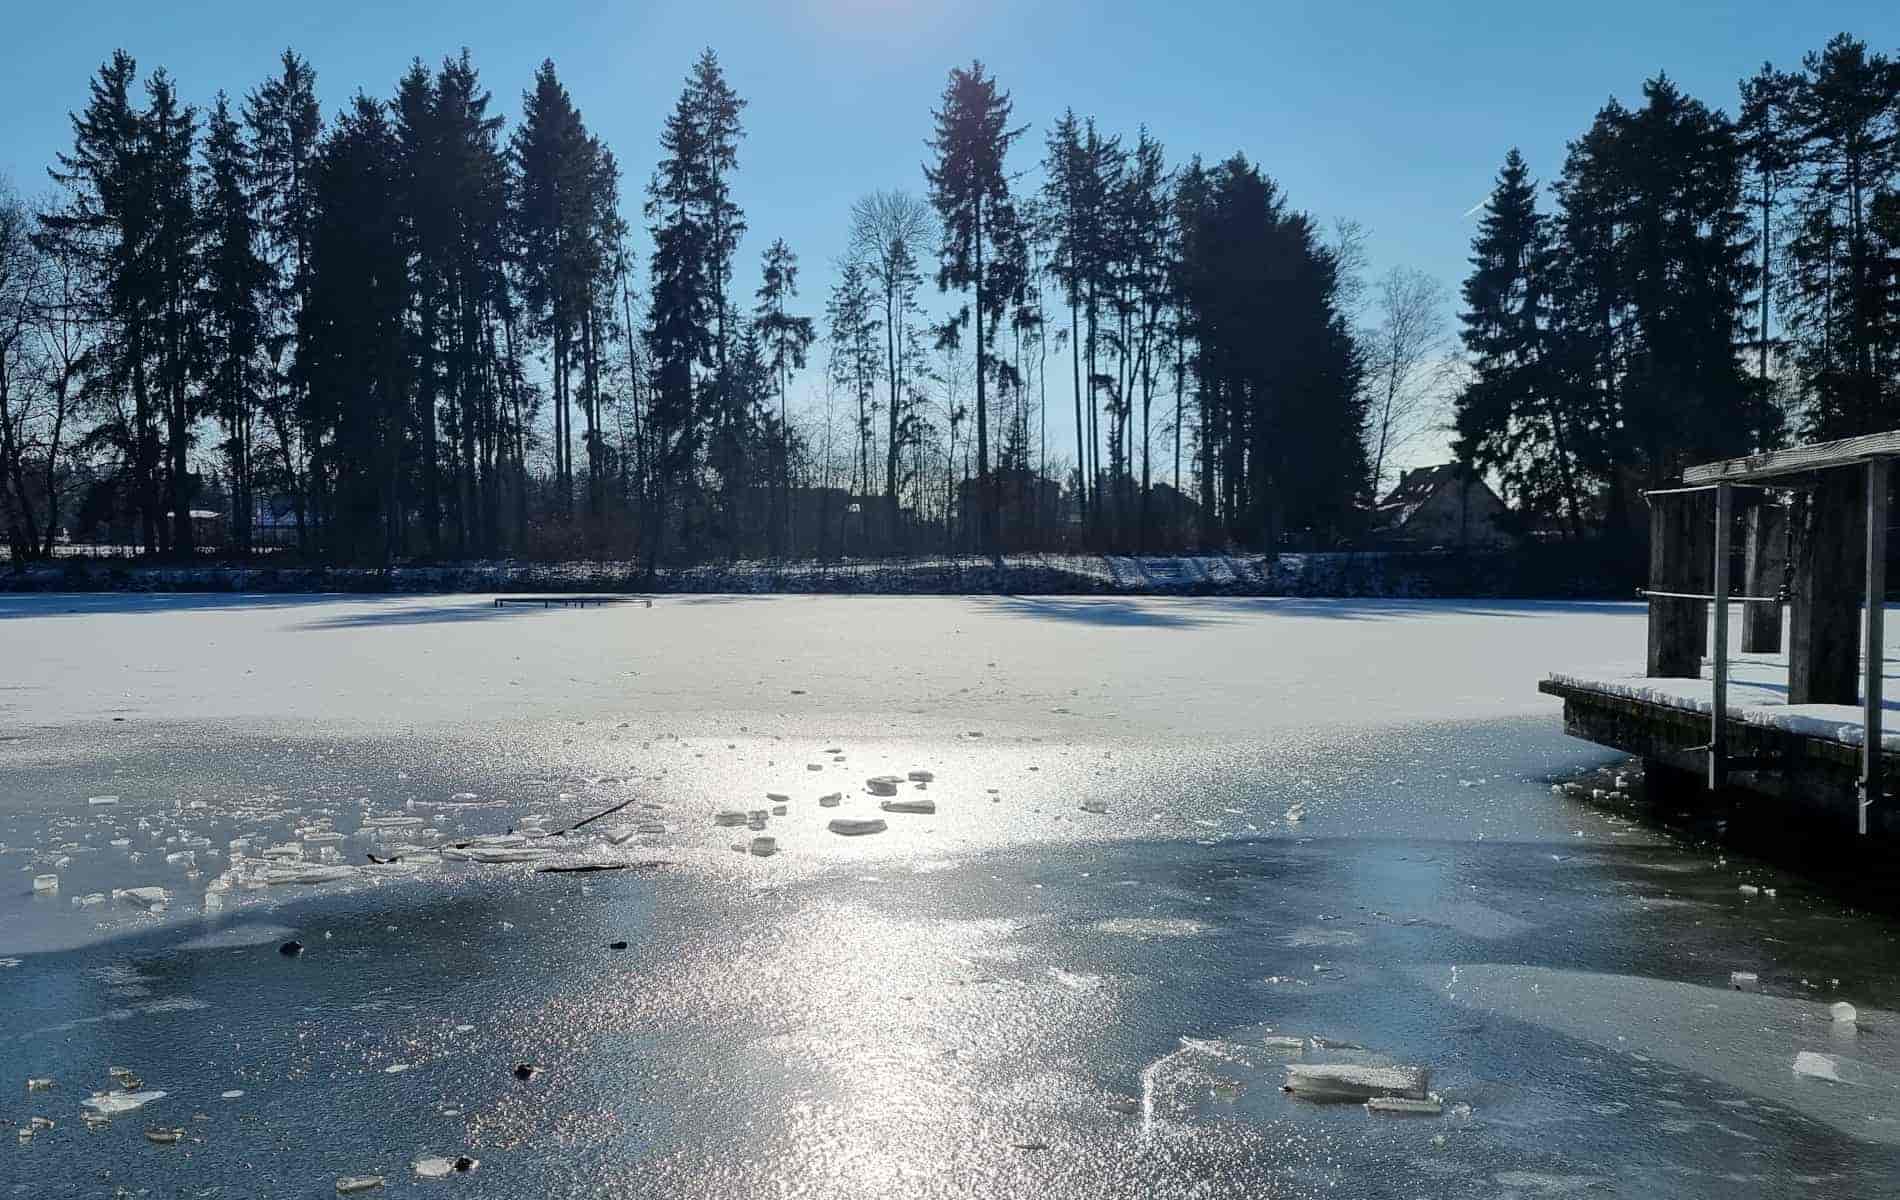 Zugefrorener See - perfekt fürs Eisbaden | Biohacking